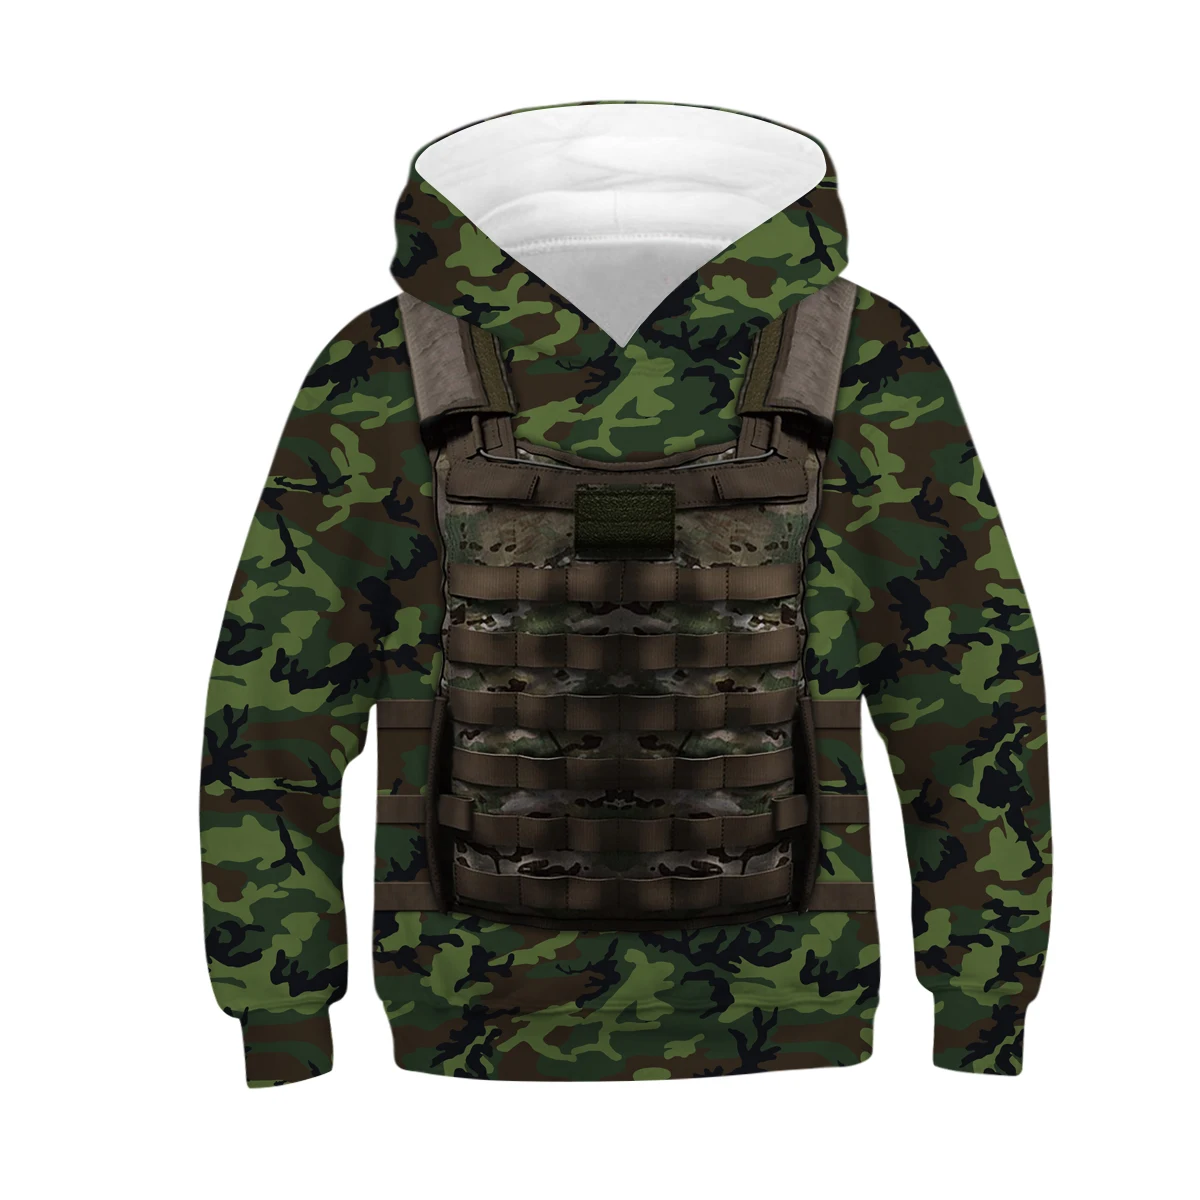 Raisvern/новые модные детские толстовки с 3D-принтом для маленьких мальчиков с камуфляжным цифровым принтом в армейском и зеленом цвете; Специальный стиль - Цвет: Бежевый